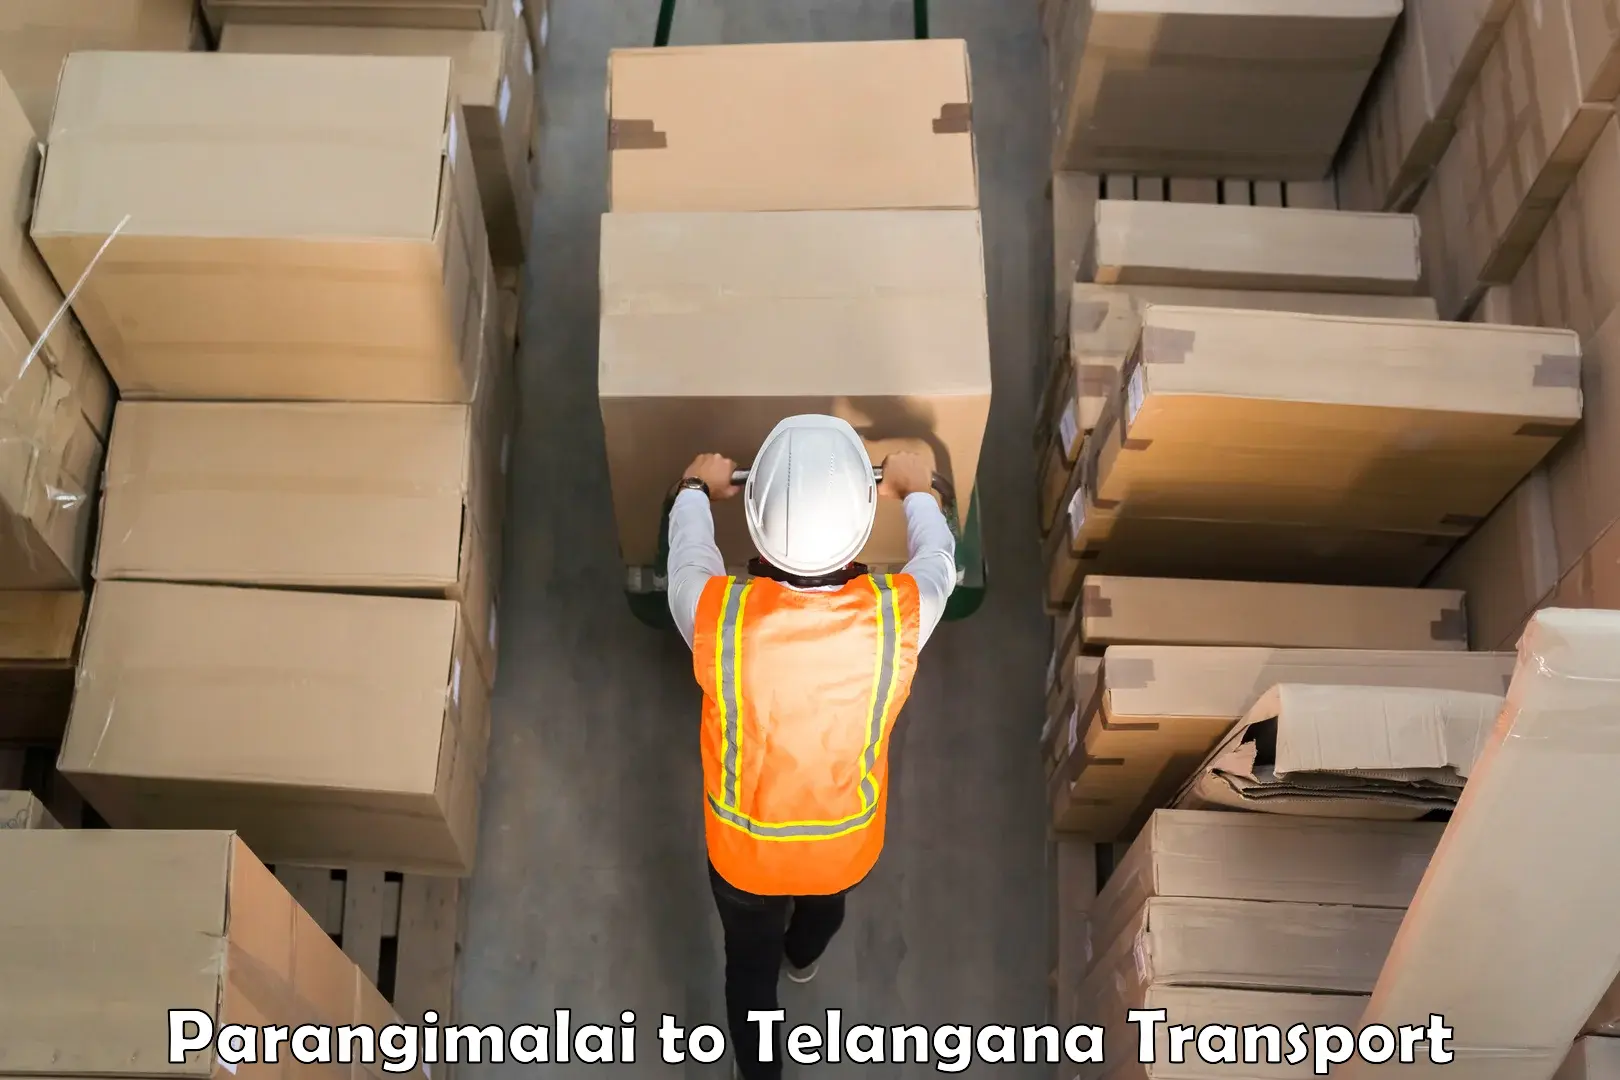 Domestic transport services Parangimalai to Telangana